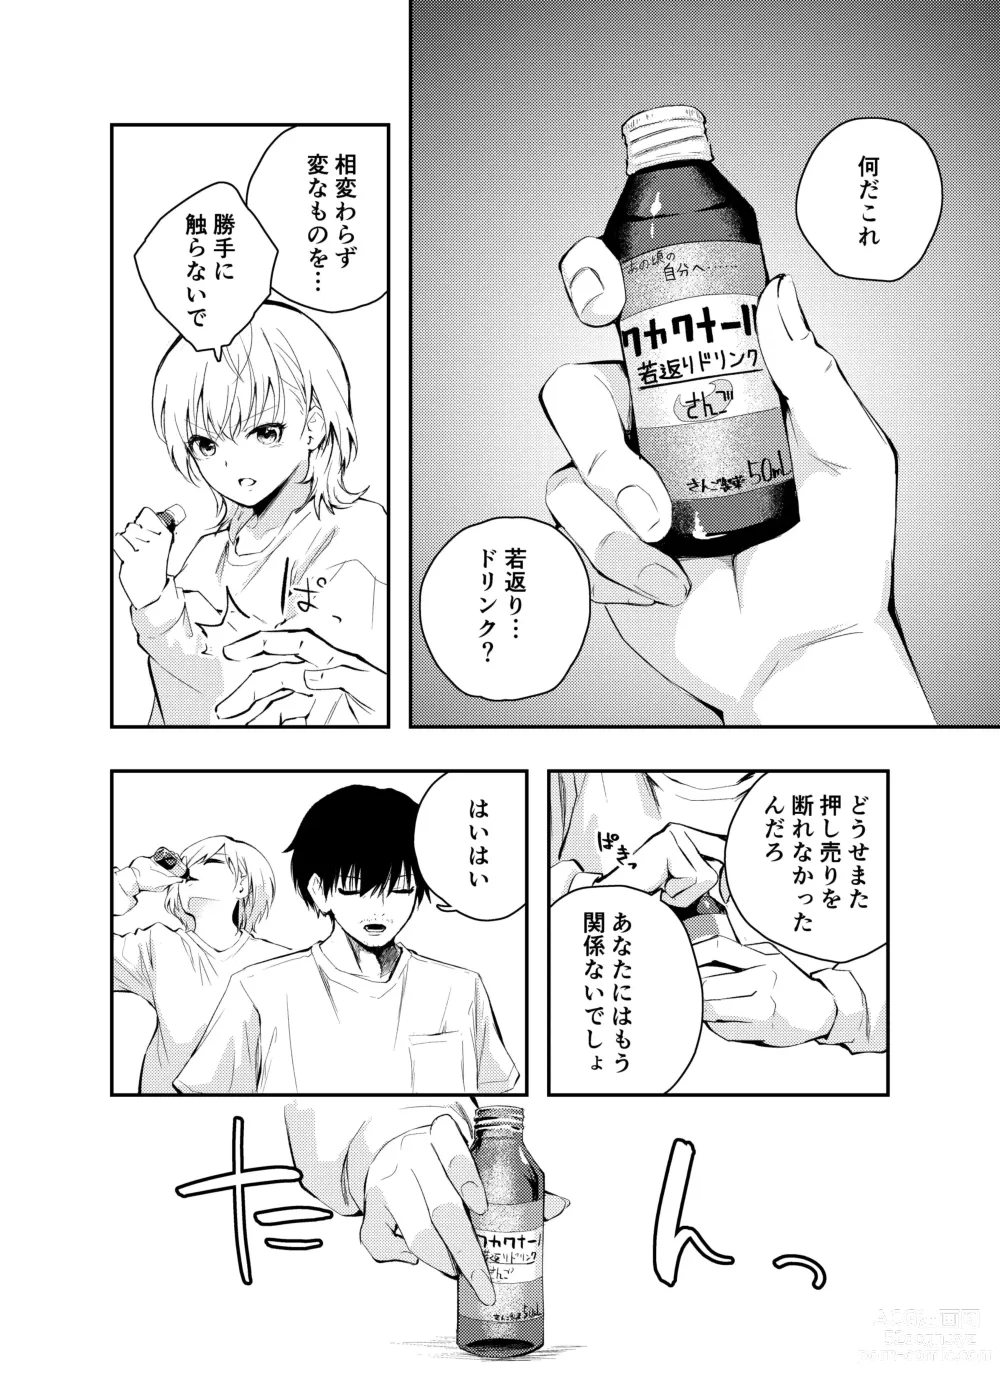 Page 4 of doujinshi Mukashi no Sugata ni Modotta Tsuma to no Sex wa Uwaki desu ka?